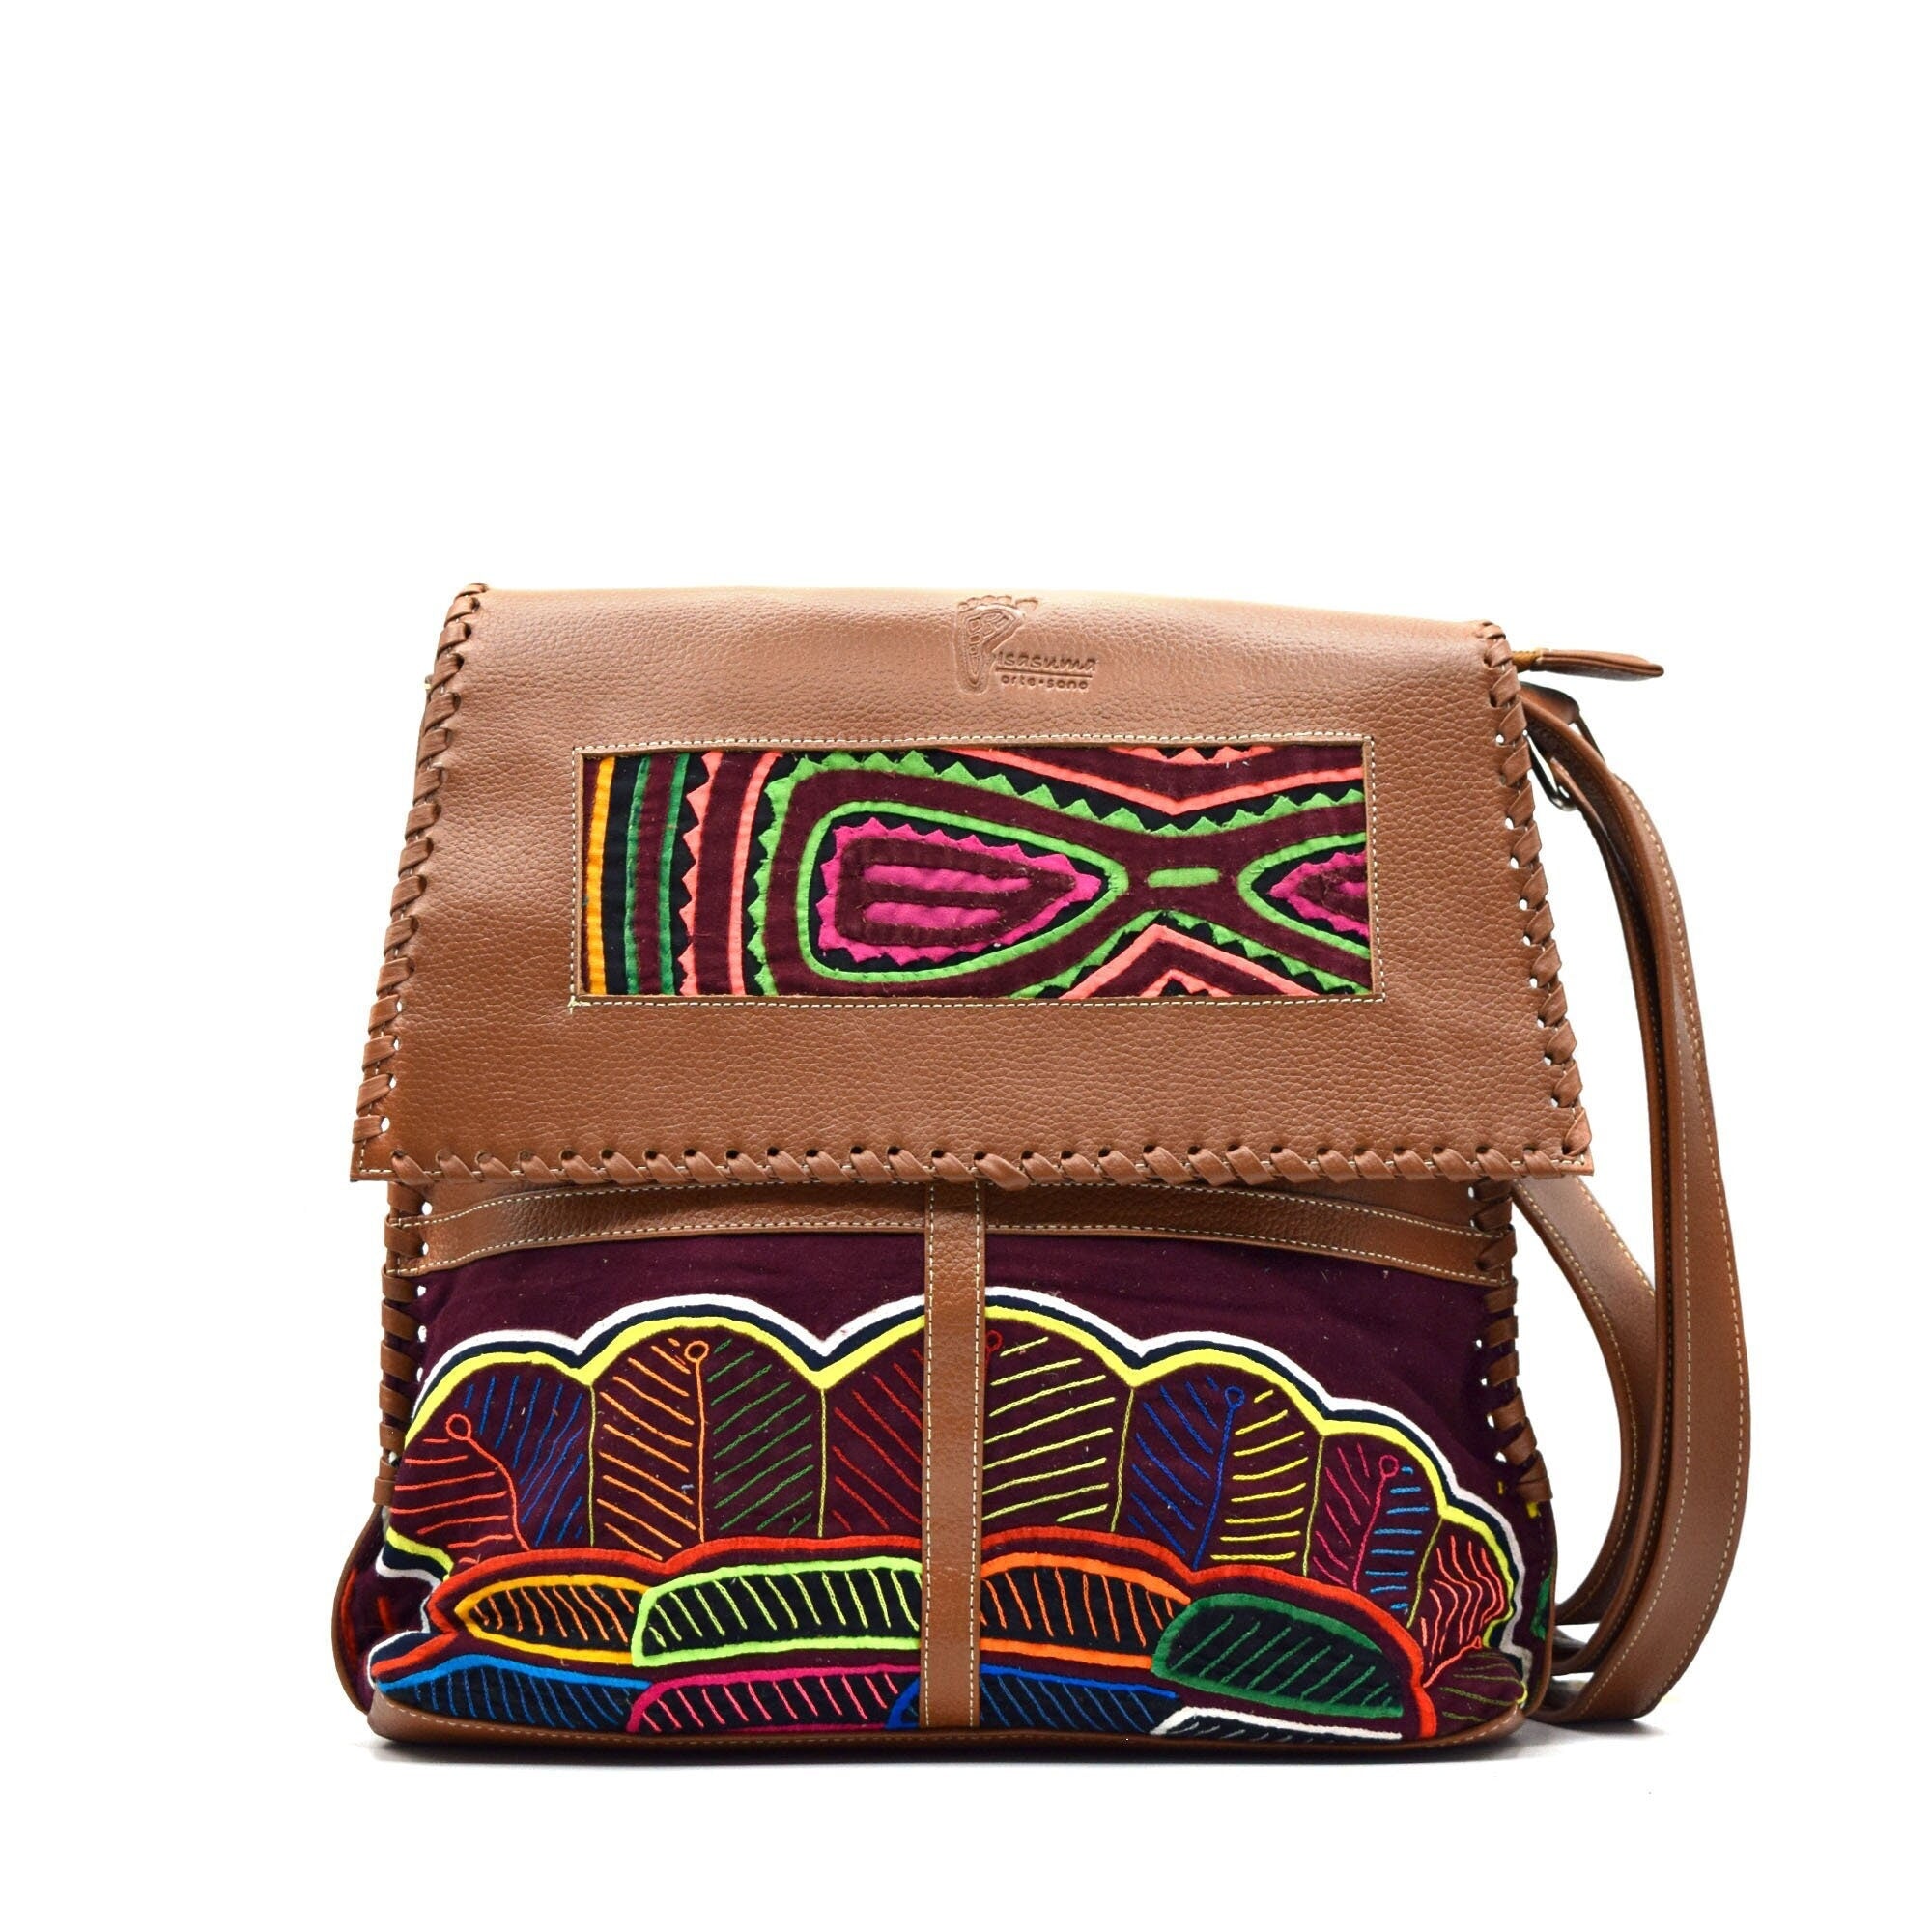 Leather Messenger Bag | Mola Appliqué | Gifts ideas for her | Boho Bag | Shoulder Bag | Crossbody Bag | Hippie Bag